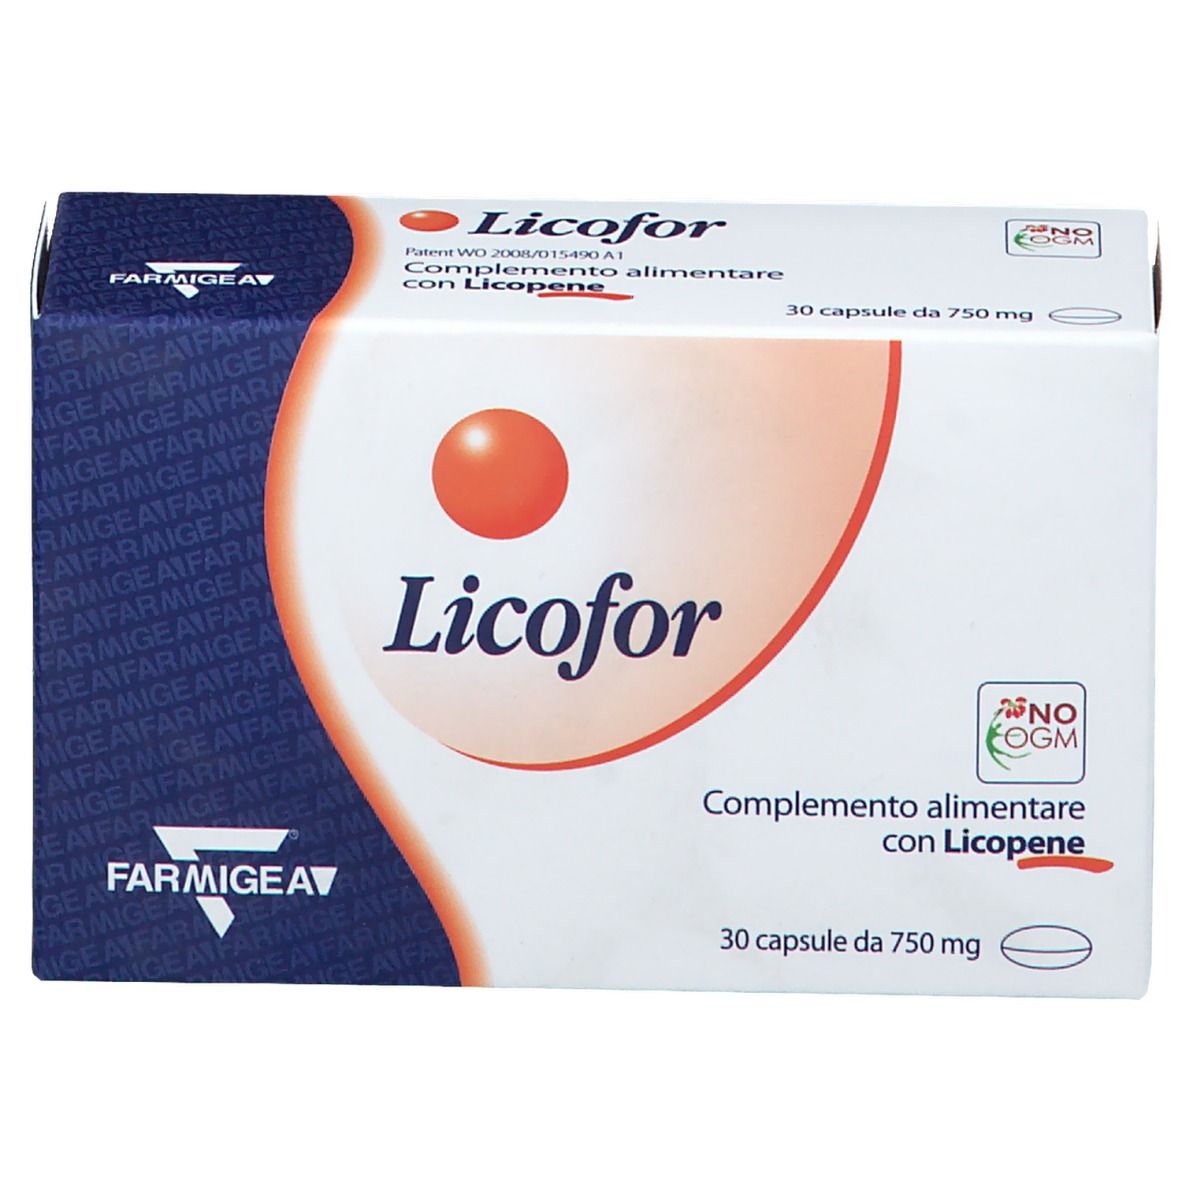 Licofor